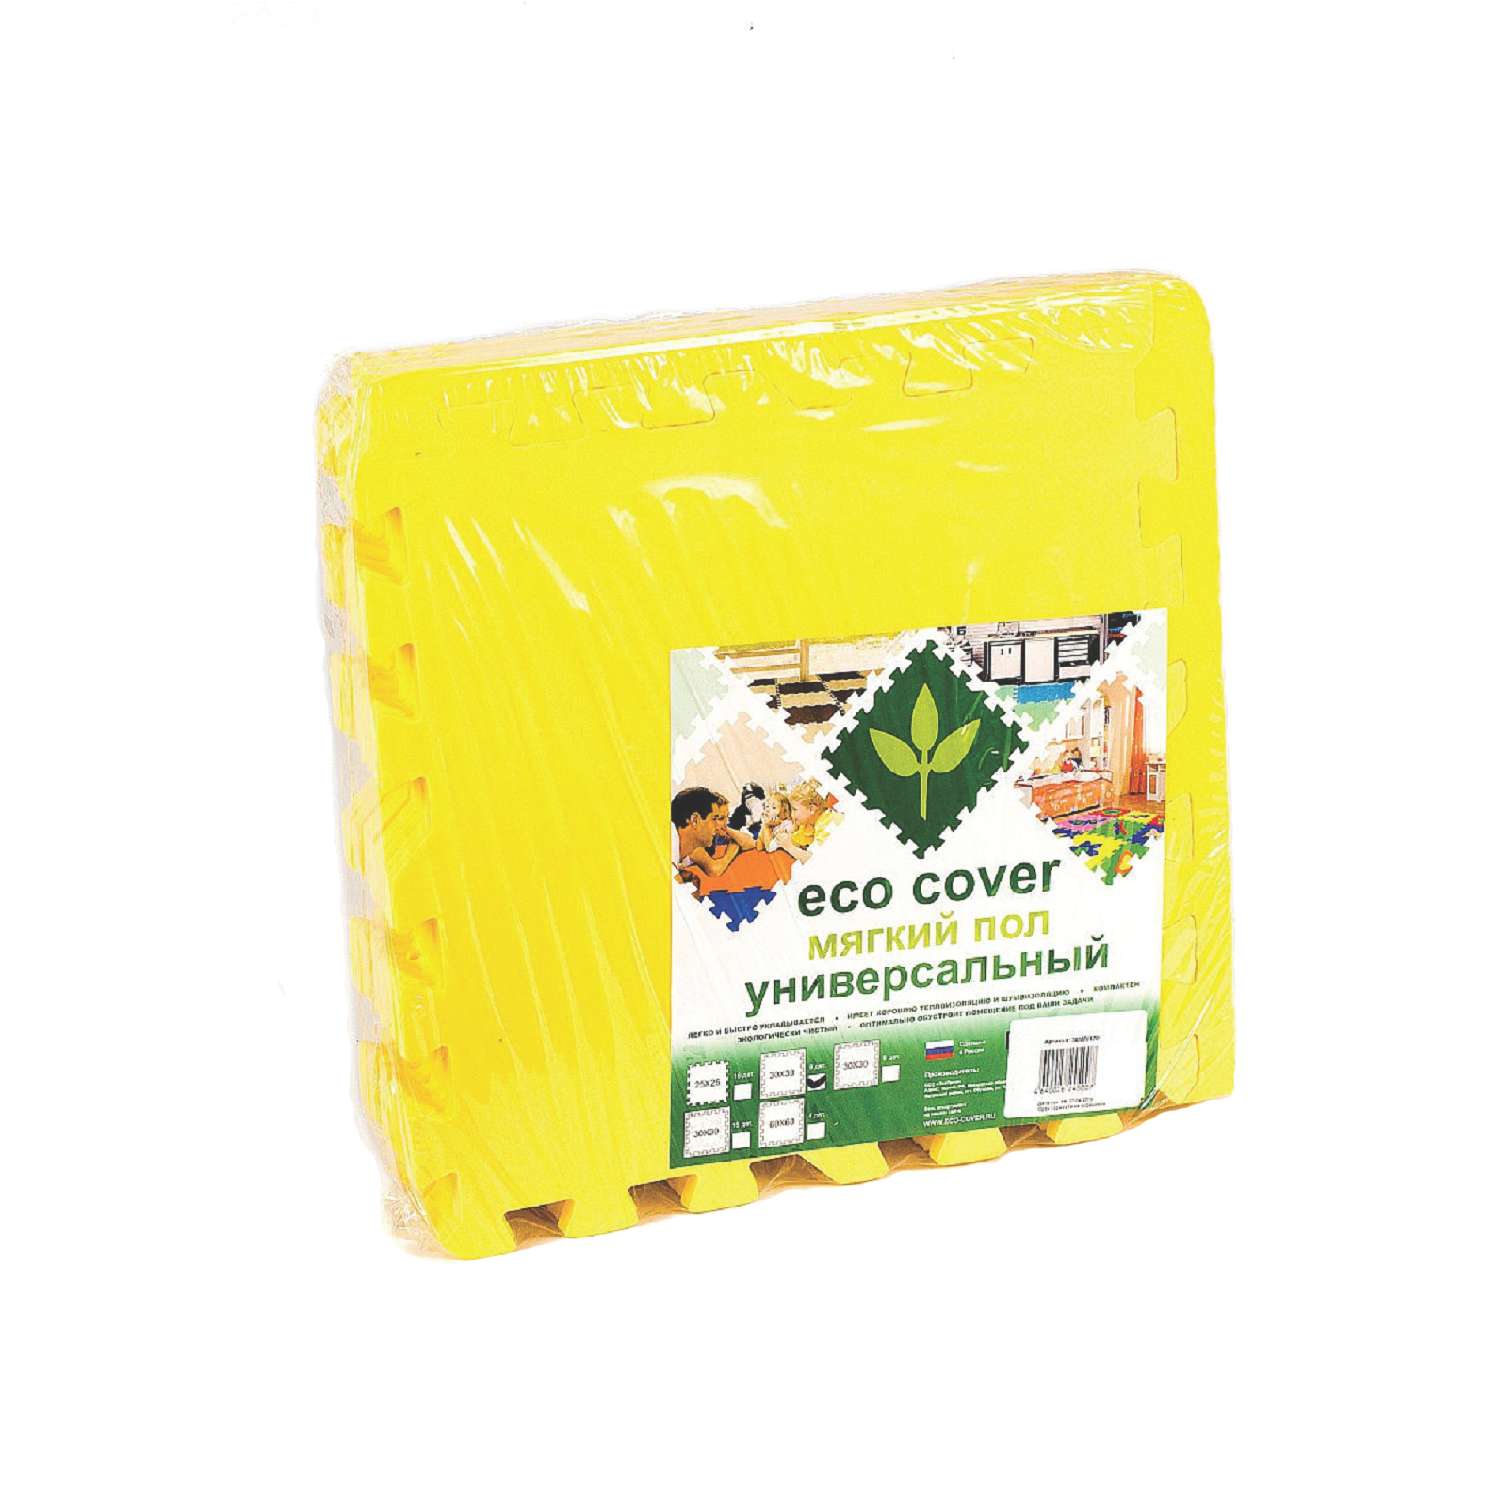 Развивающий детский коврик Eco cover игровой мягкий пол для ползания желтый 30х30 - фото 3